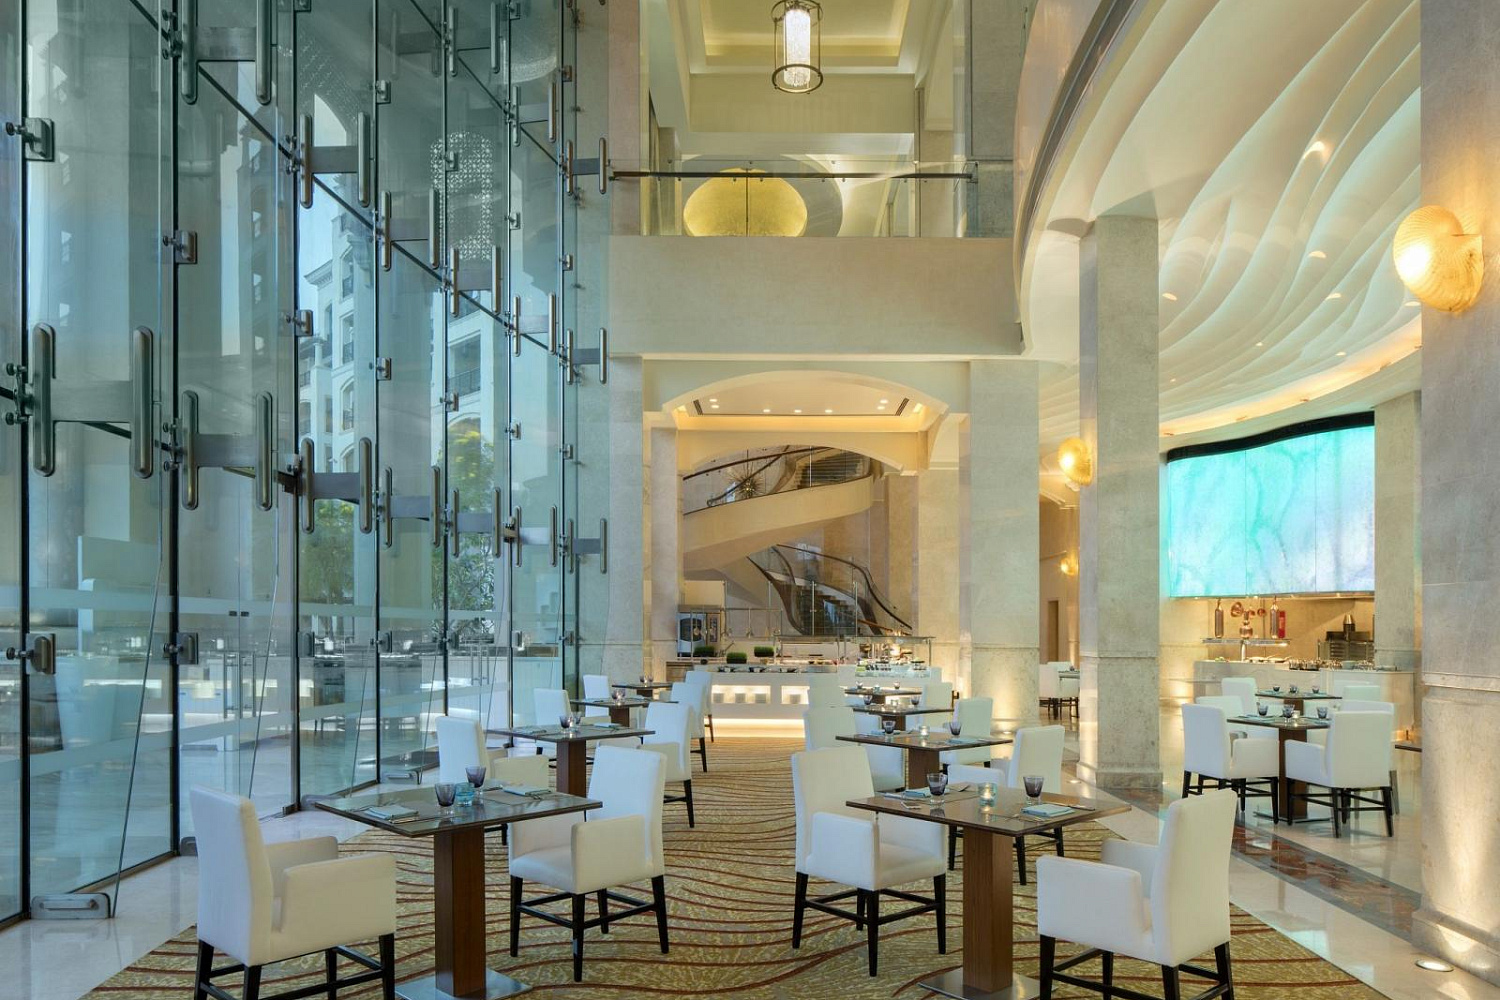 The St Regis Saadiyat Island Resort ресторан. St Regis Saadiyat Island Abu Dhabi 5. Отель St. Regis Abu Dhabi. St Regis Abu Dhabi Saadiyat. St regis saadiyat island abu dhabi